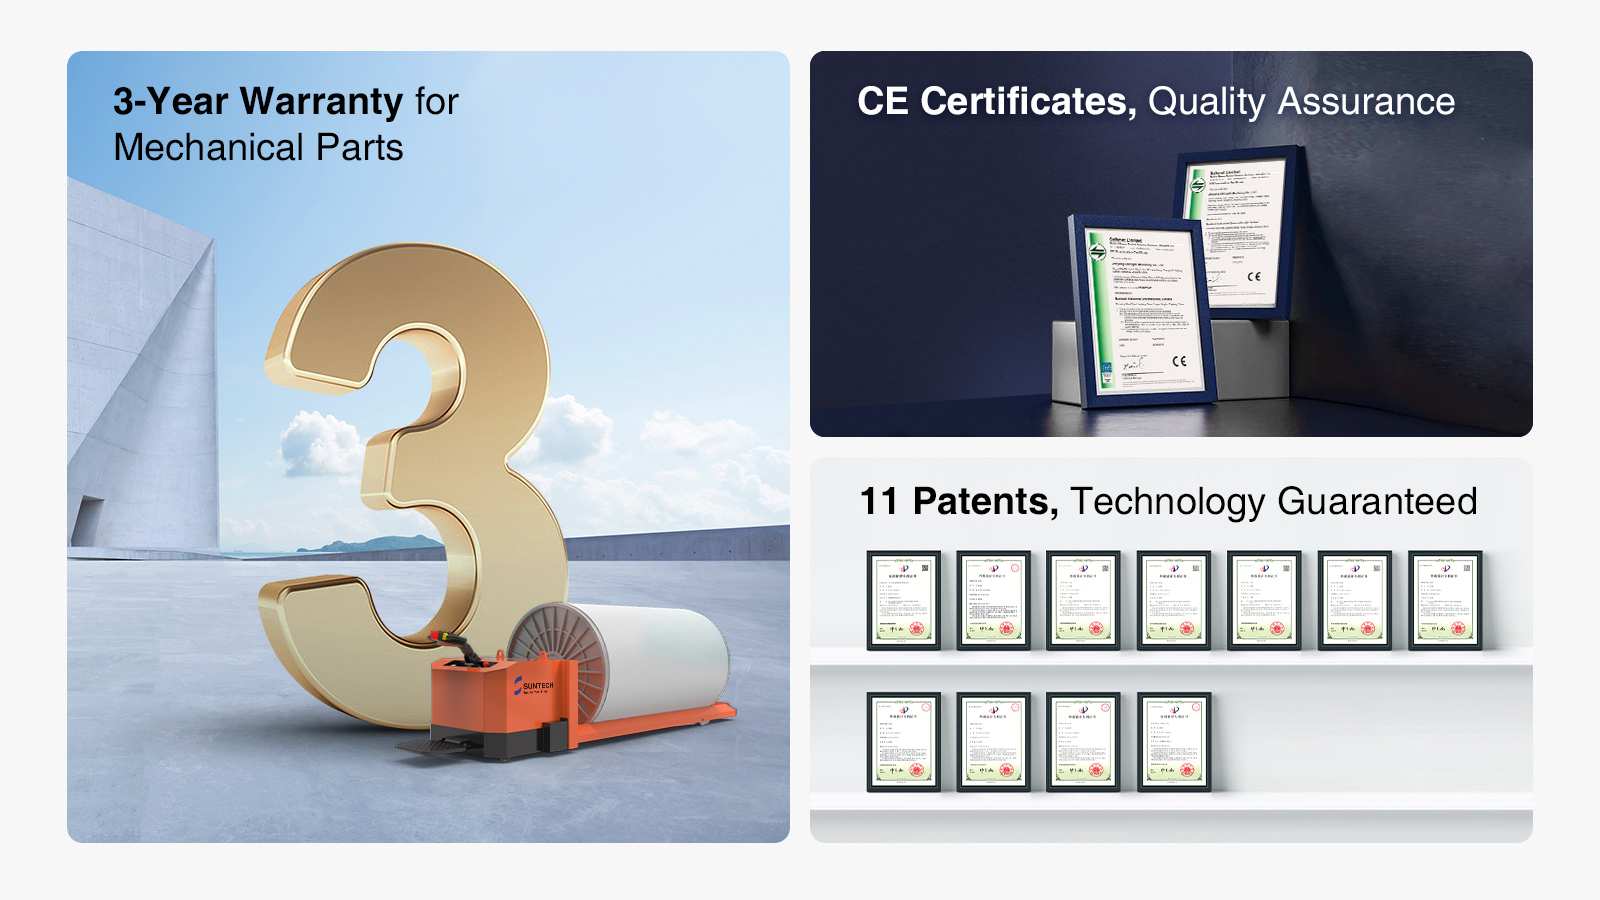 Garantía de 3 años para certificados CE, garantía de calidad de piezas mecánicas, 11 patentes y tecnología garantizada